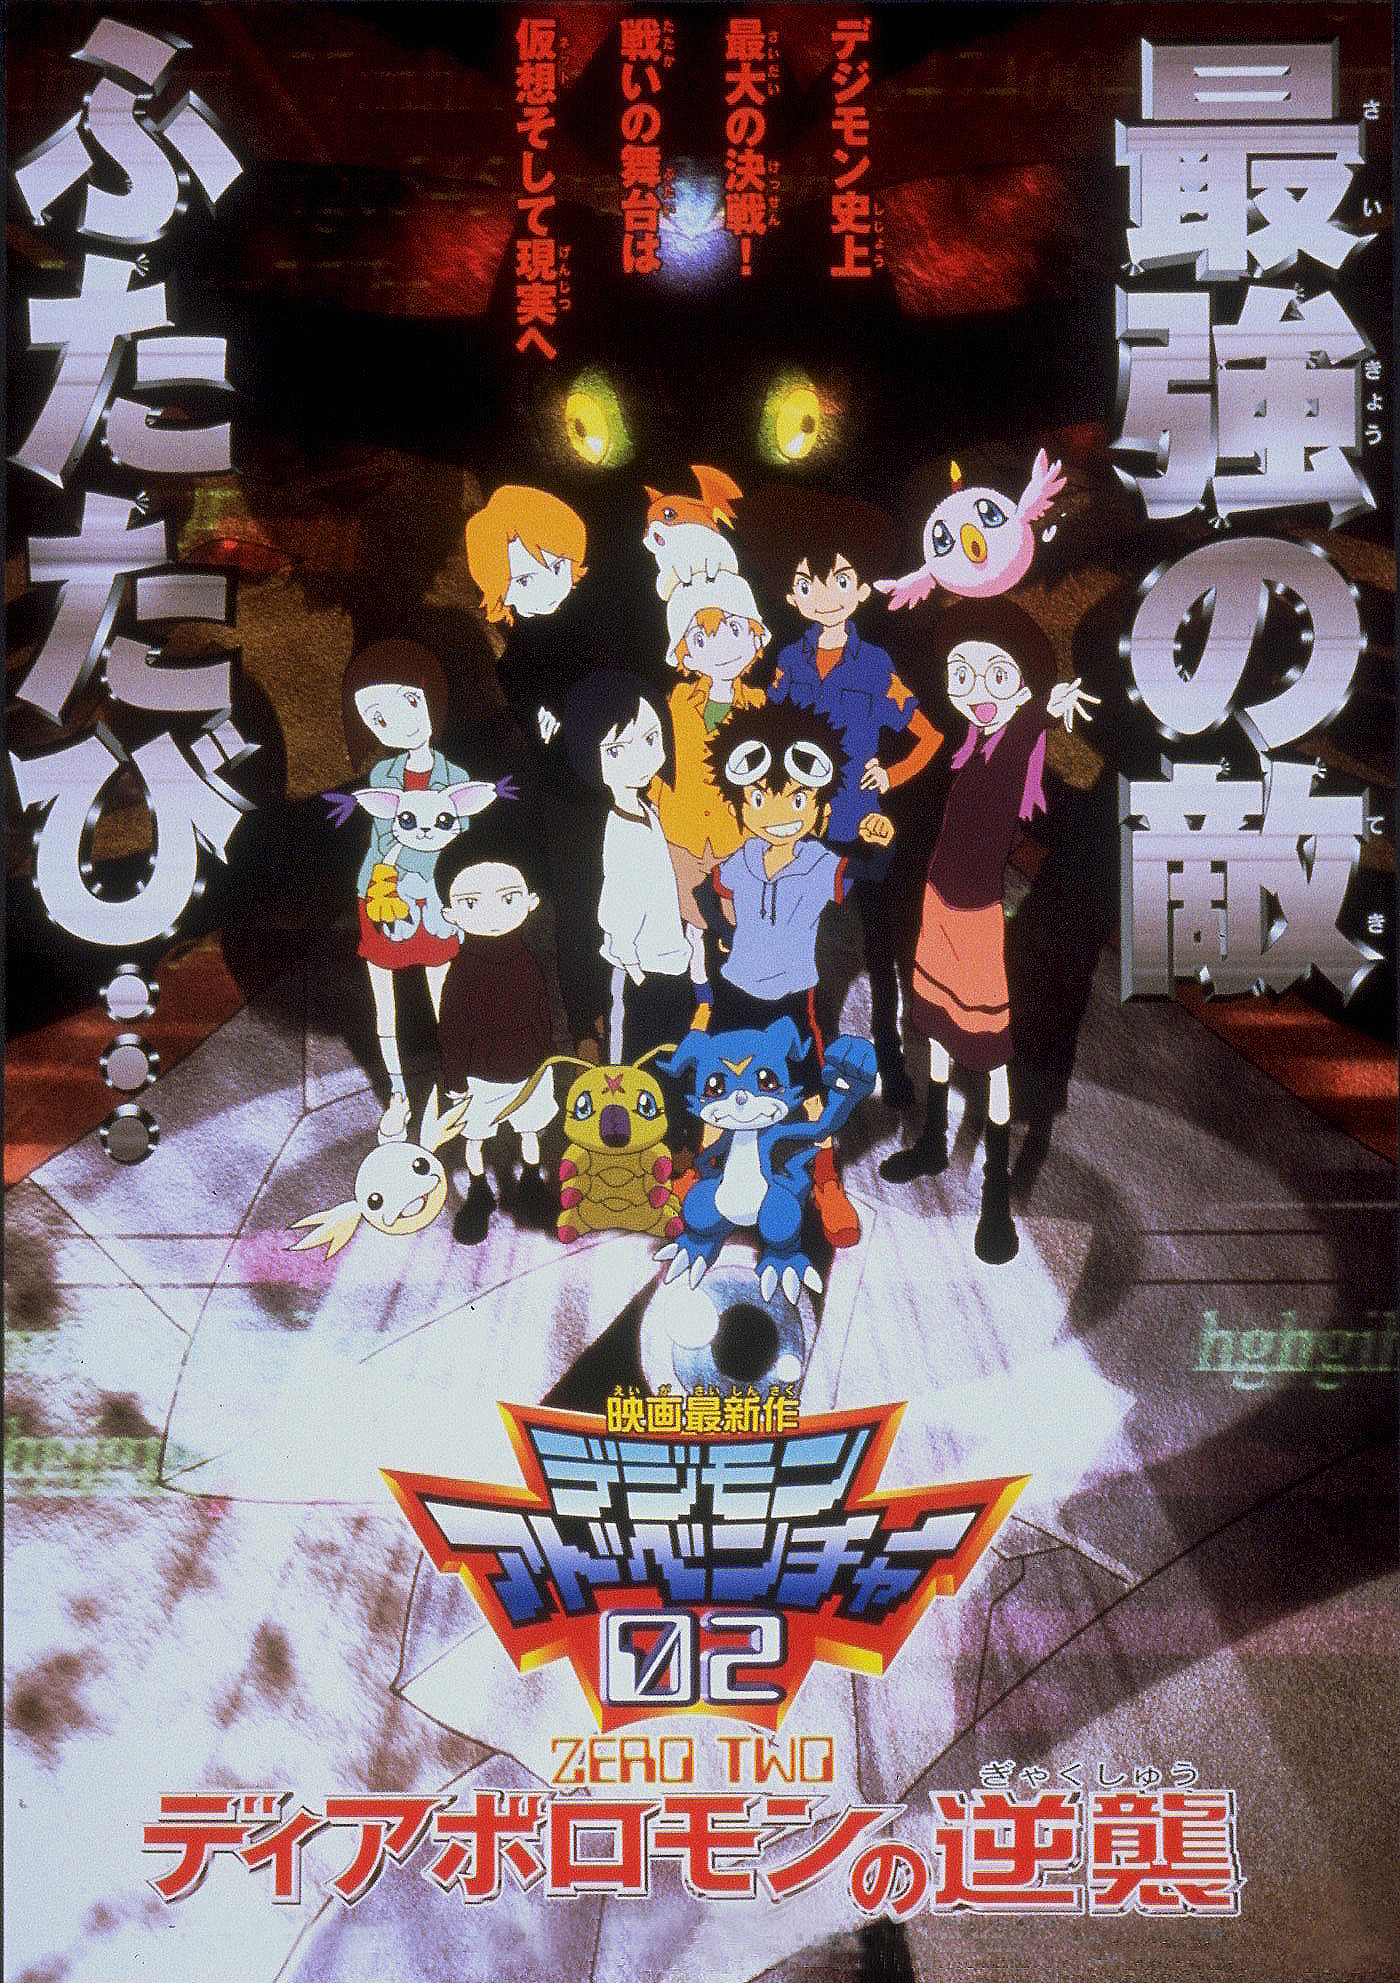 Faz mais de meia década que não tem Digimon dublado em Pindorama, então vim  aqui avisar geral que o filme Digimon Adventure 02: O Início vai estrear  dia 30 nos cinemas nacionais